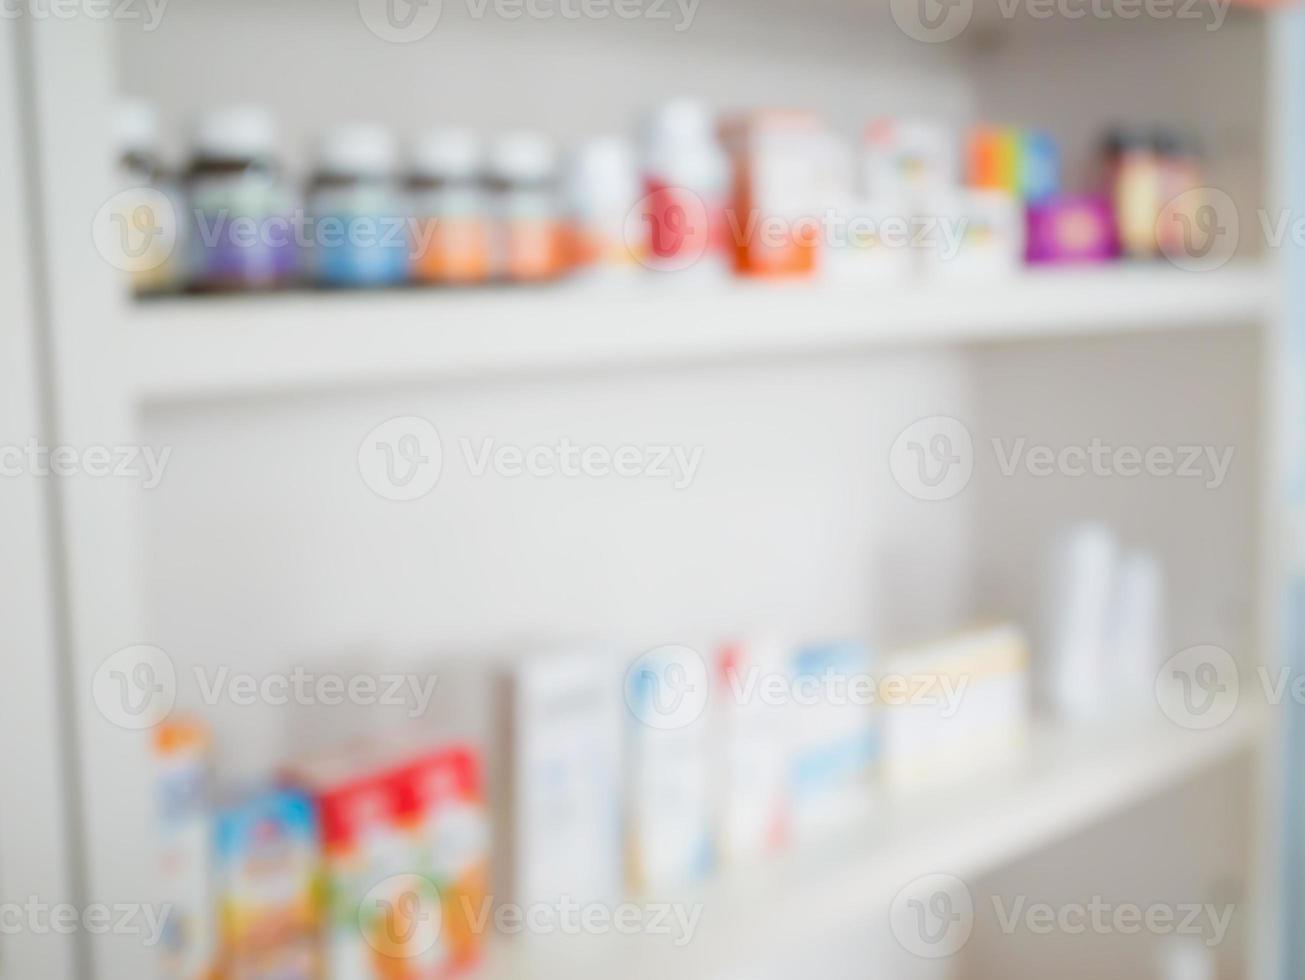 cierre de frascos de medicamentos en estantes de medicamentos en la farmacia foto